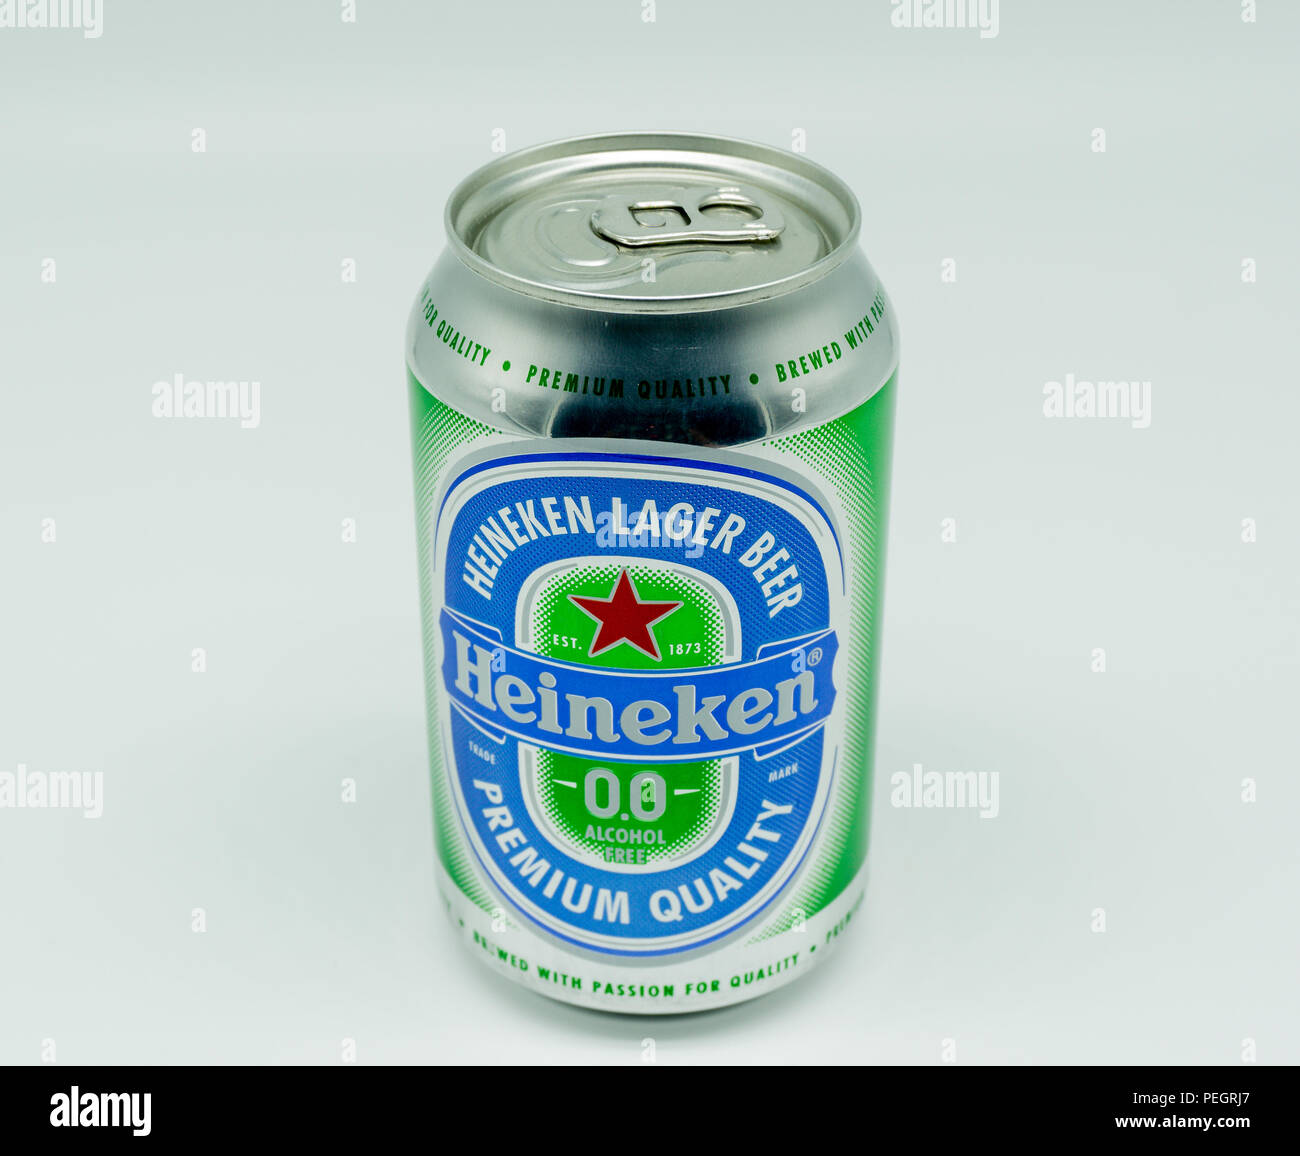 Largs, Ecosse, UK - 14 août 2018 : l'étain de Heineken La bière sans alcool dans une boîte de conserve recyclables et une partie de la UK's drink campagne WISE. Banque D'Images